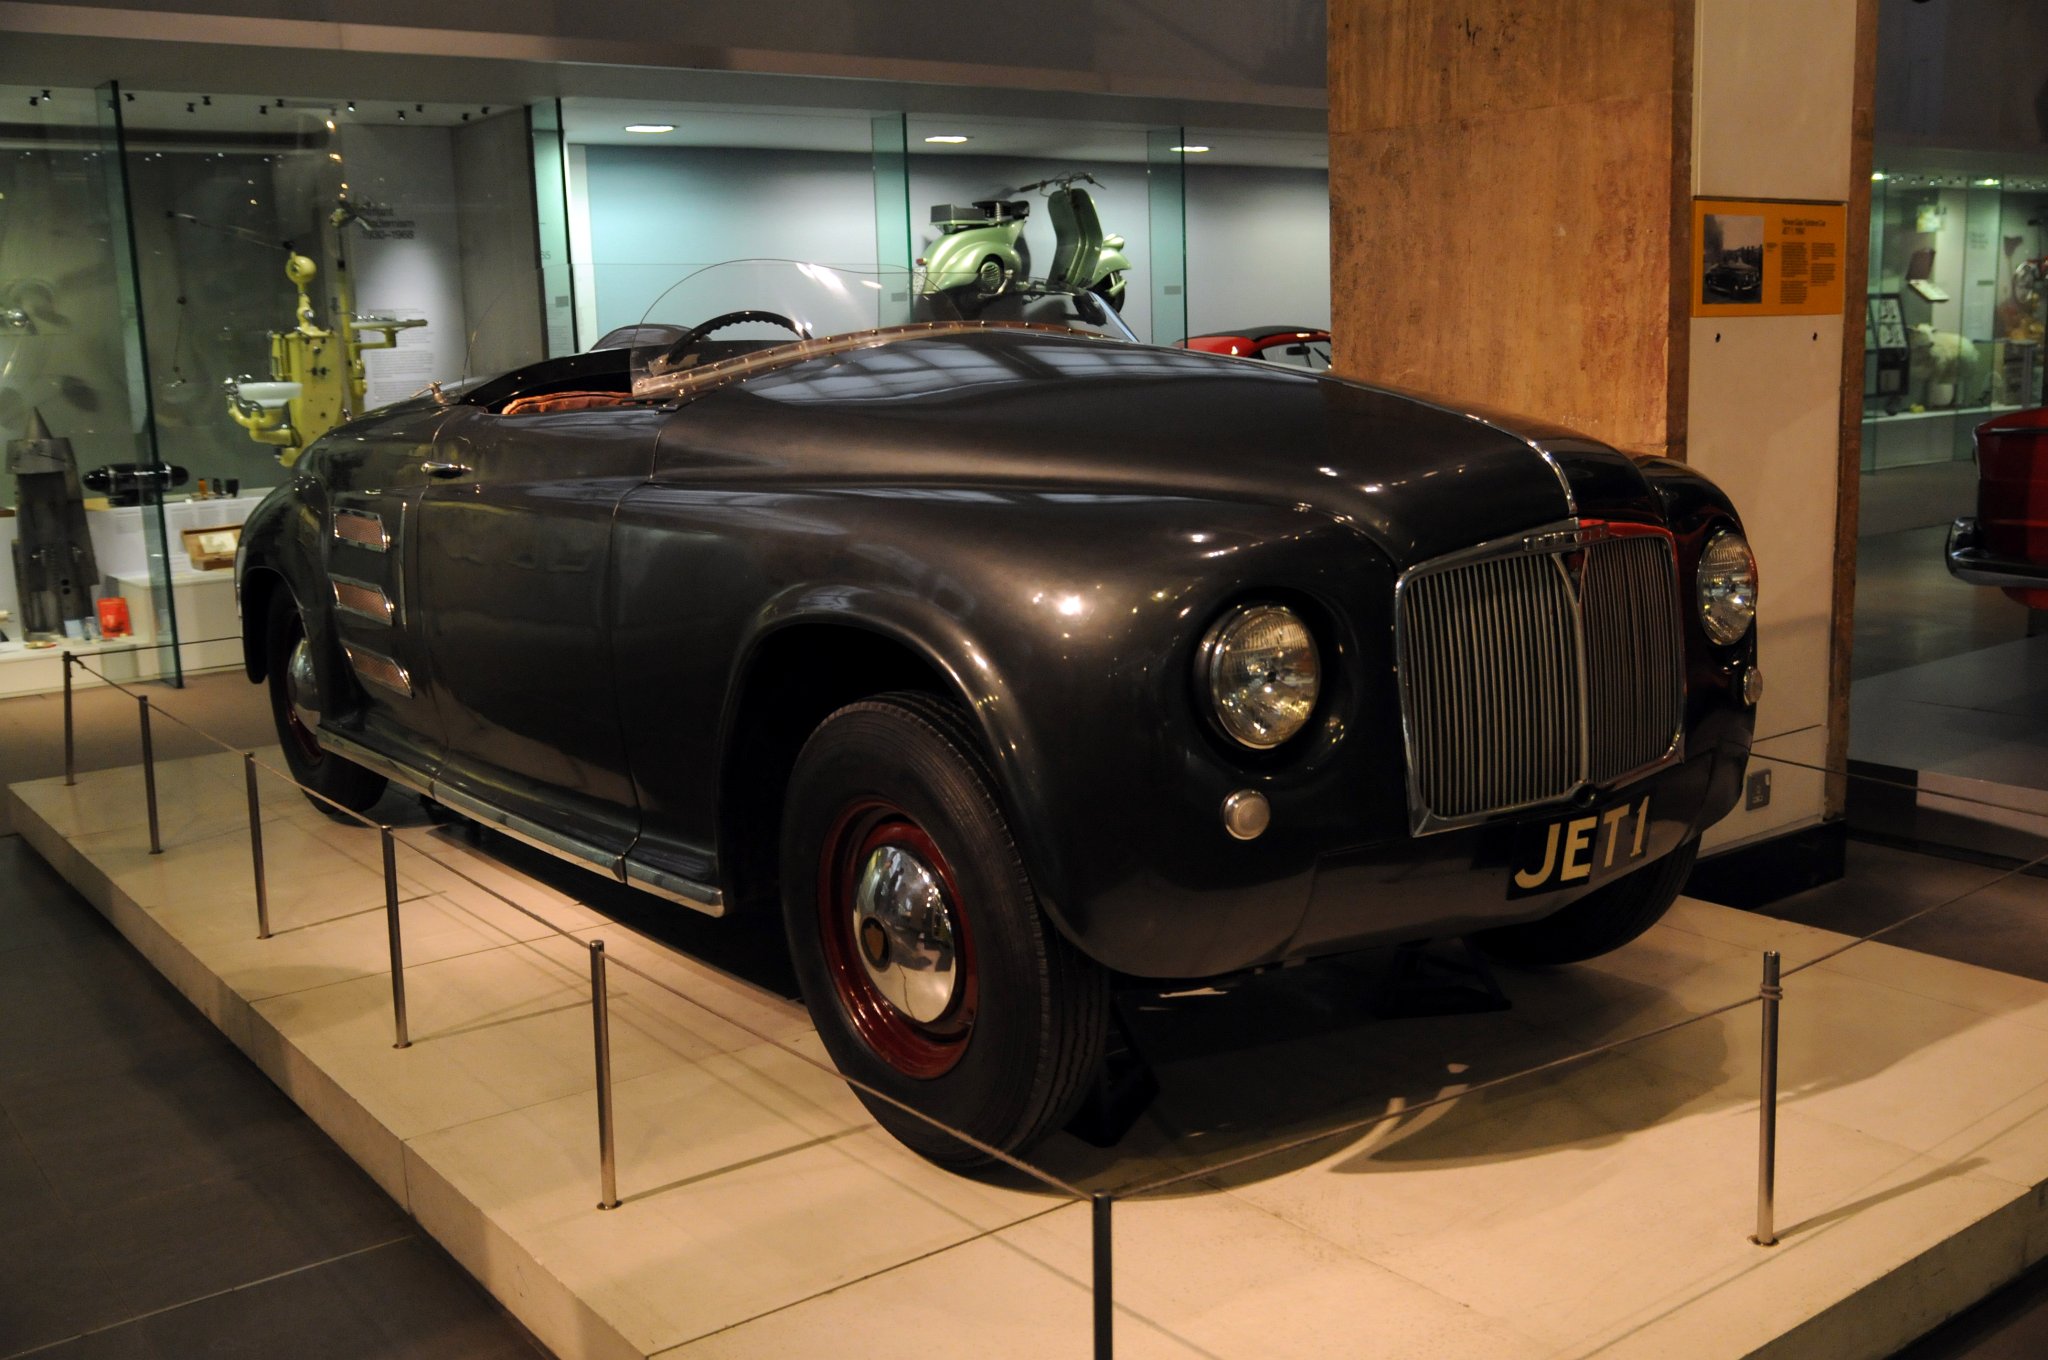 DSC_2867_1.jpg - Rover Gas Turbine Car JET1, 1950. První automobil poháněný plynovou turbínou vznikl už v roce 1950. Šlo o dvoumístné vozidlo s názvem JET1, které bylo dílem britského výrobce Rover. V roce 1952 dosáhl Rover JET1 s turbínou rotující otáčkami 50 000/min-1 rýchlostní rekord 245 km/h.